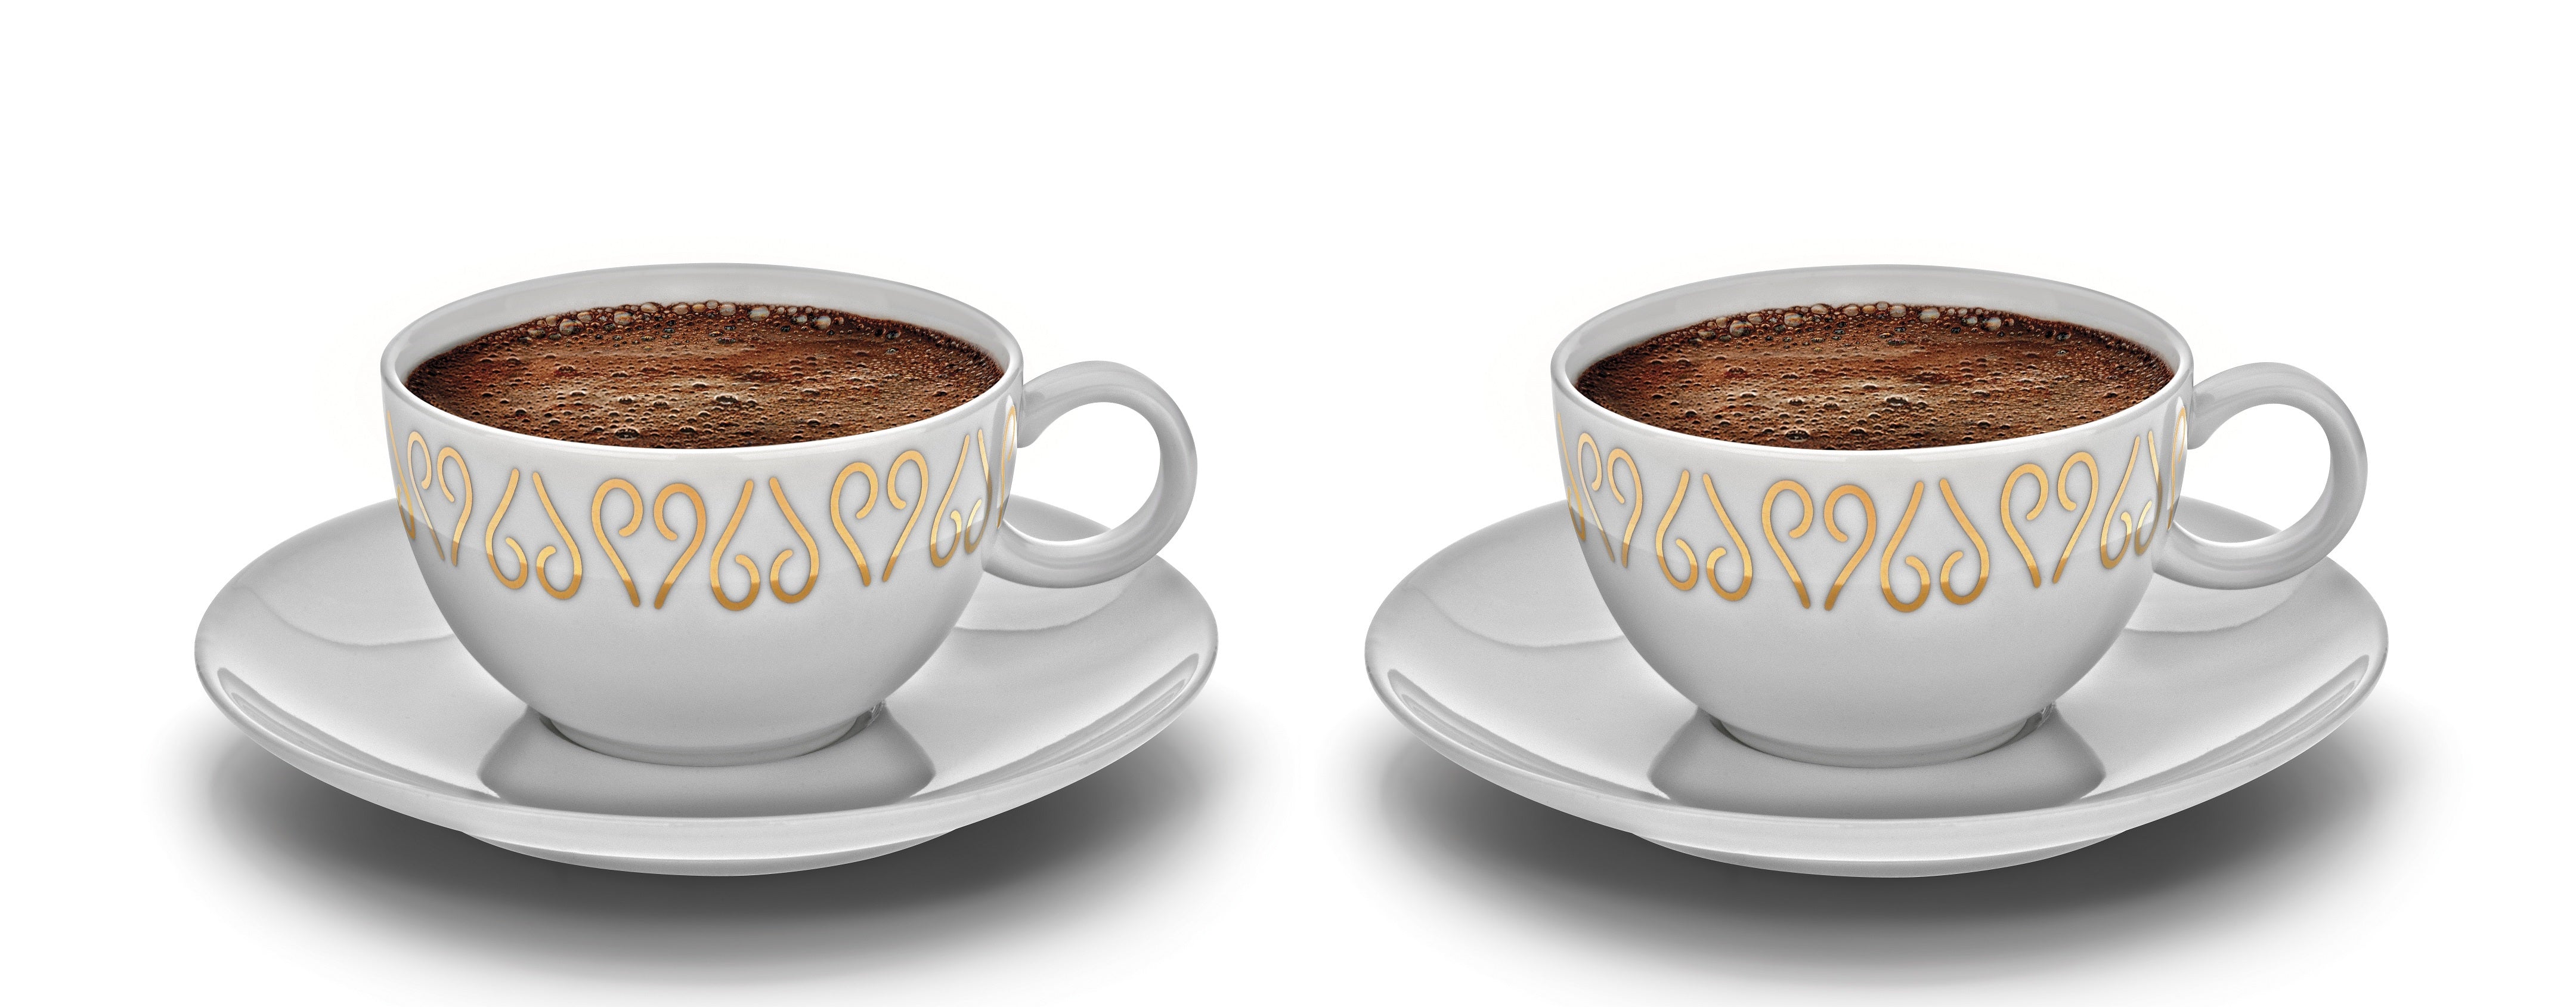 Arzum Okka Turkish Coffee cups